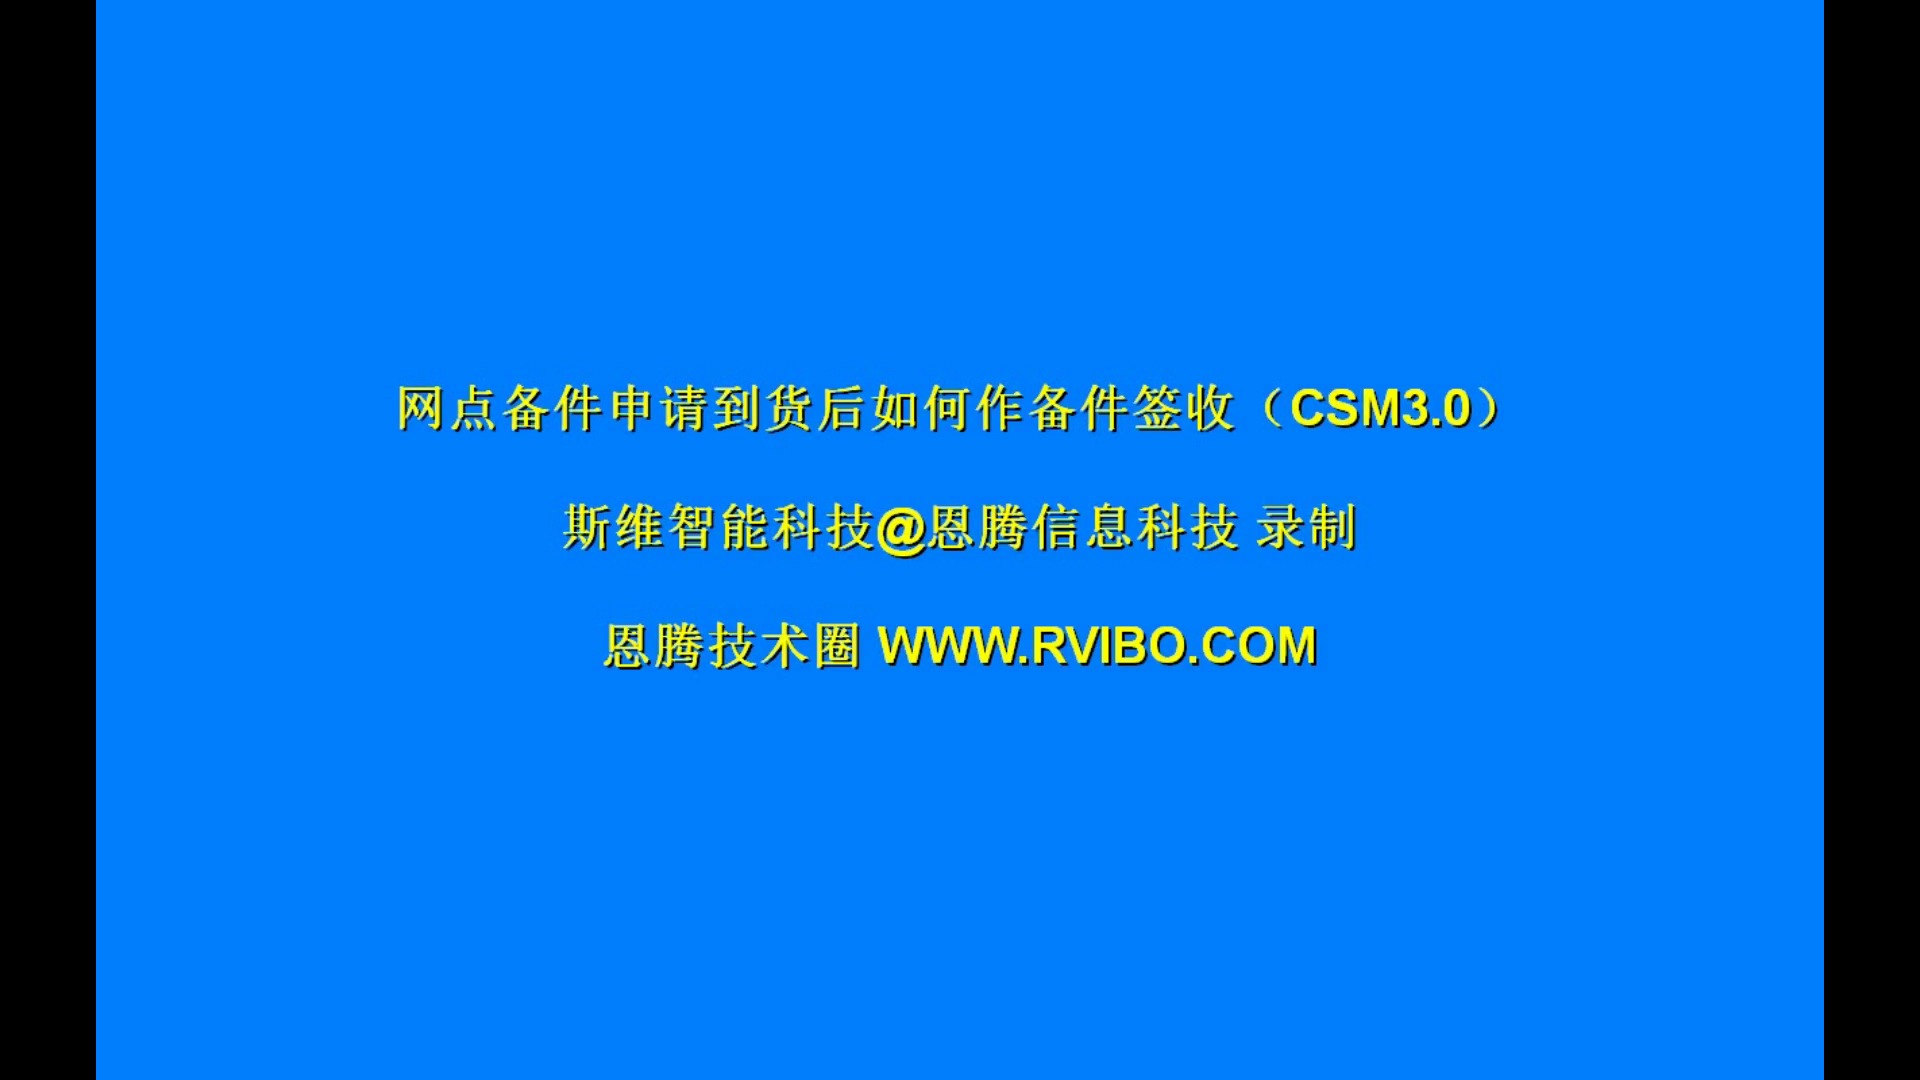 售后服务交付系统（CSM3.0）使用之网点备件签收操作视频